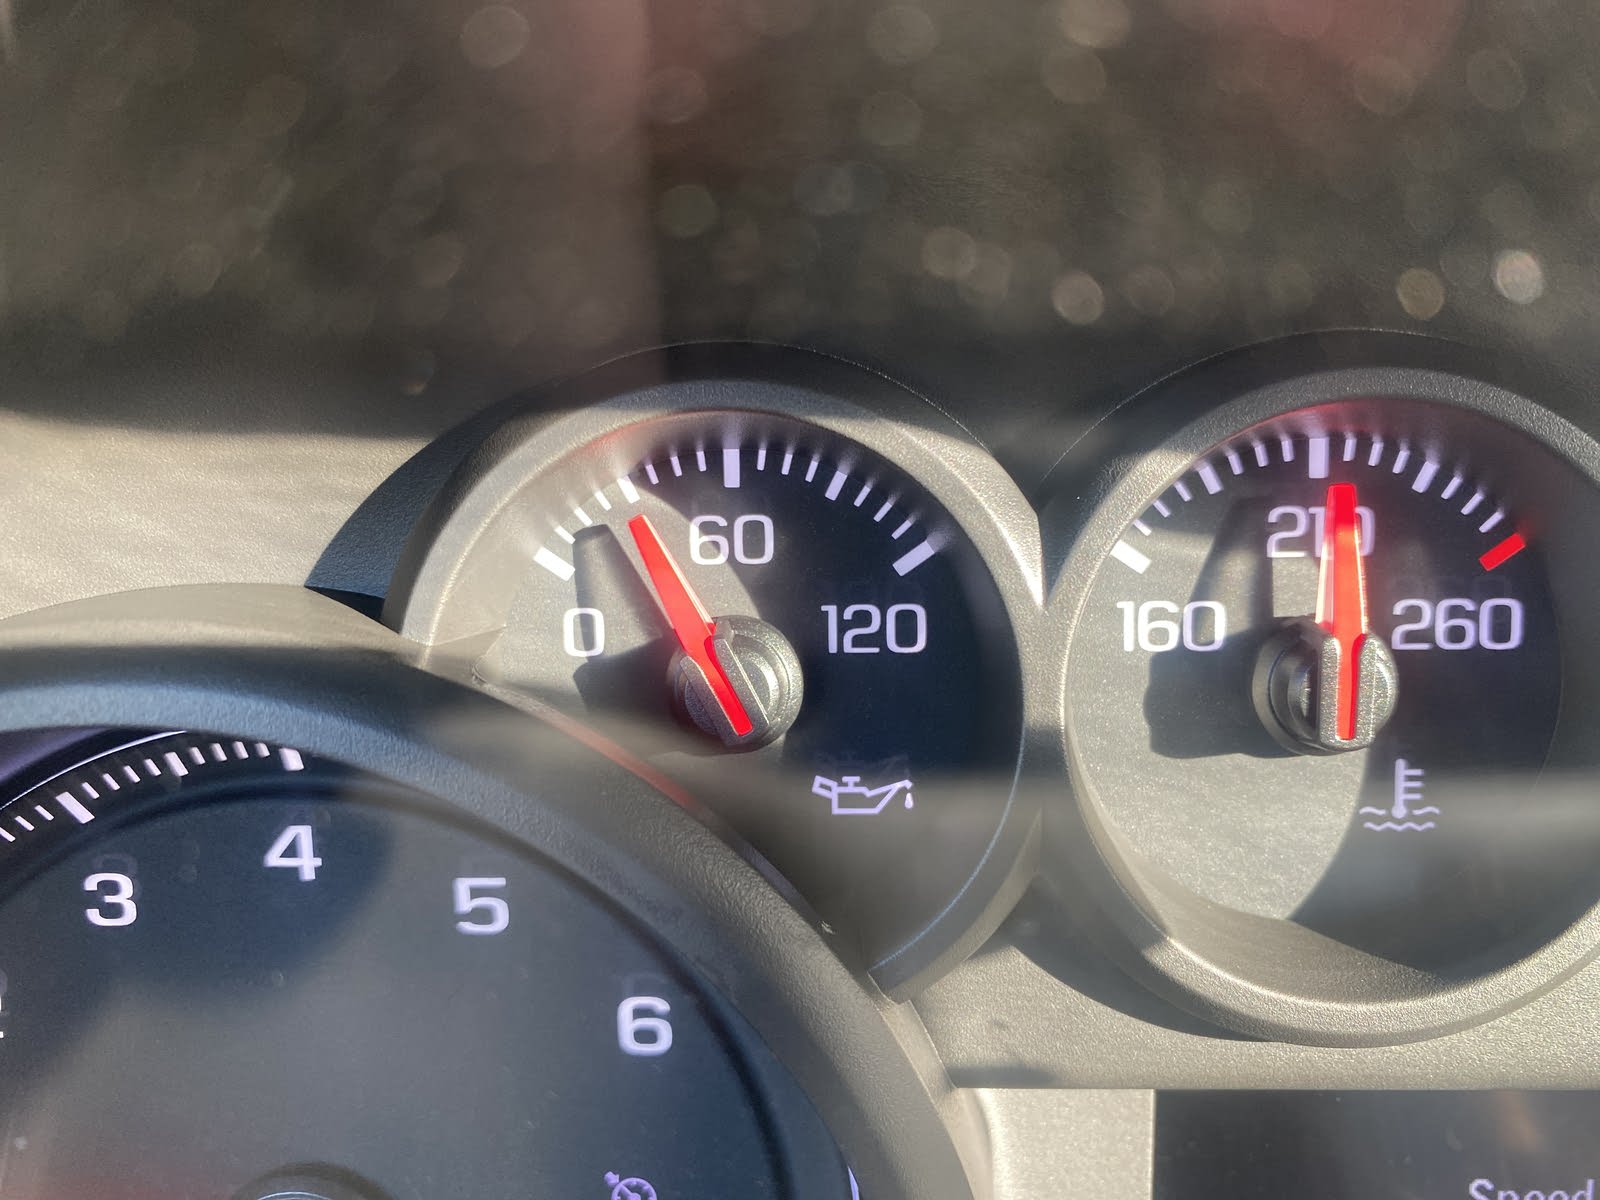 Chevrolet Silverado 1500 Questions - 2020 Silverado rough idle low oil  pressure and odd smell. - CarGurus